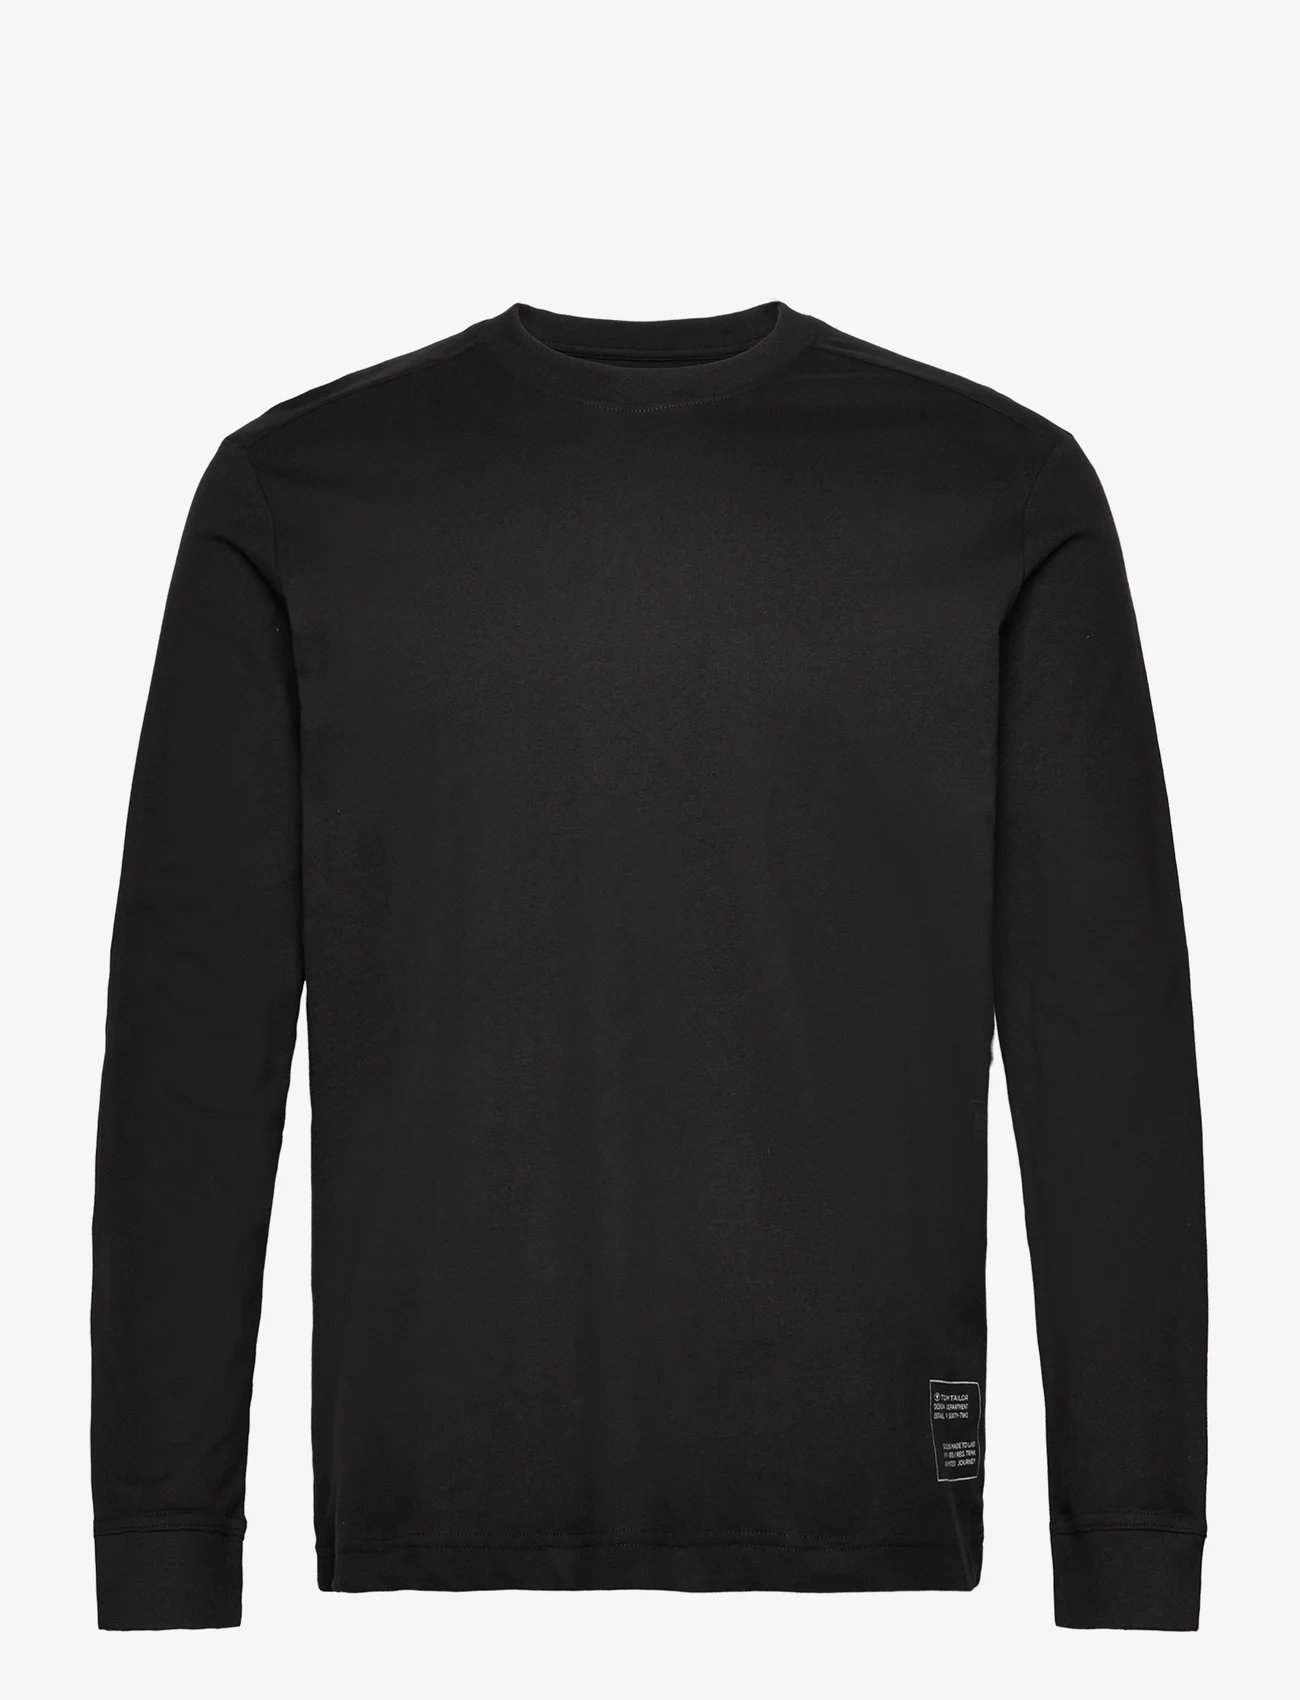 Tom Tailor - basic longsleeve t-shirt - laveste priser - black - 0